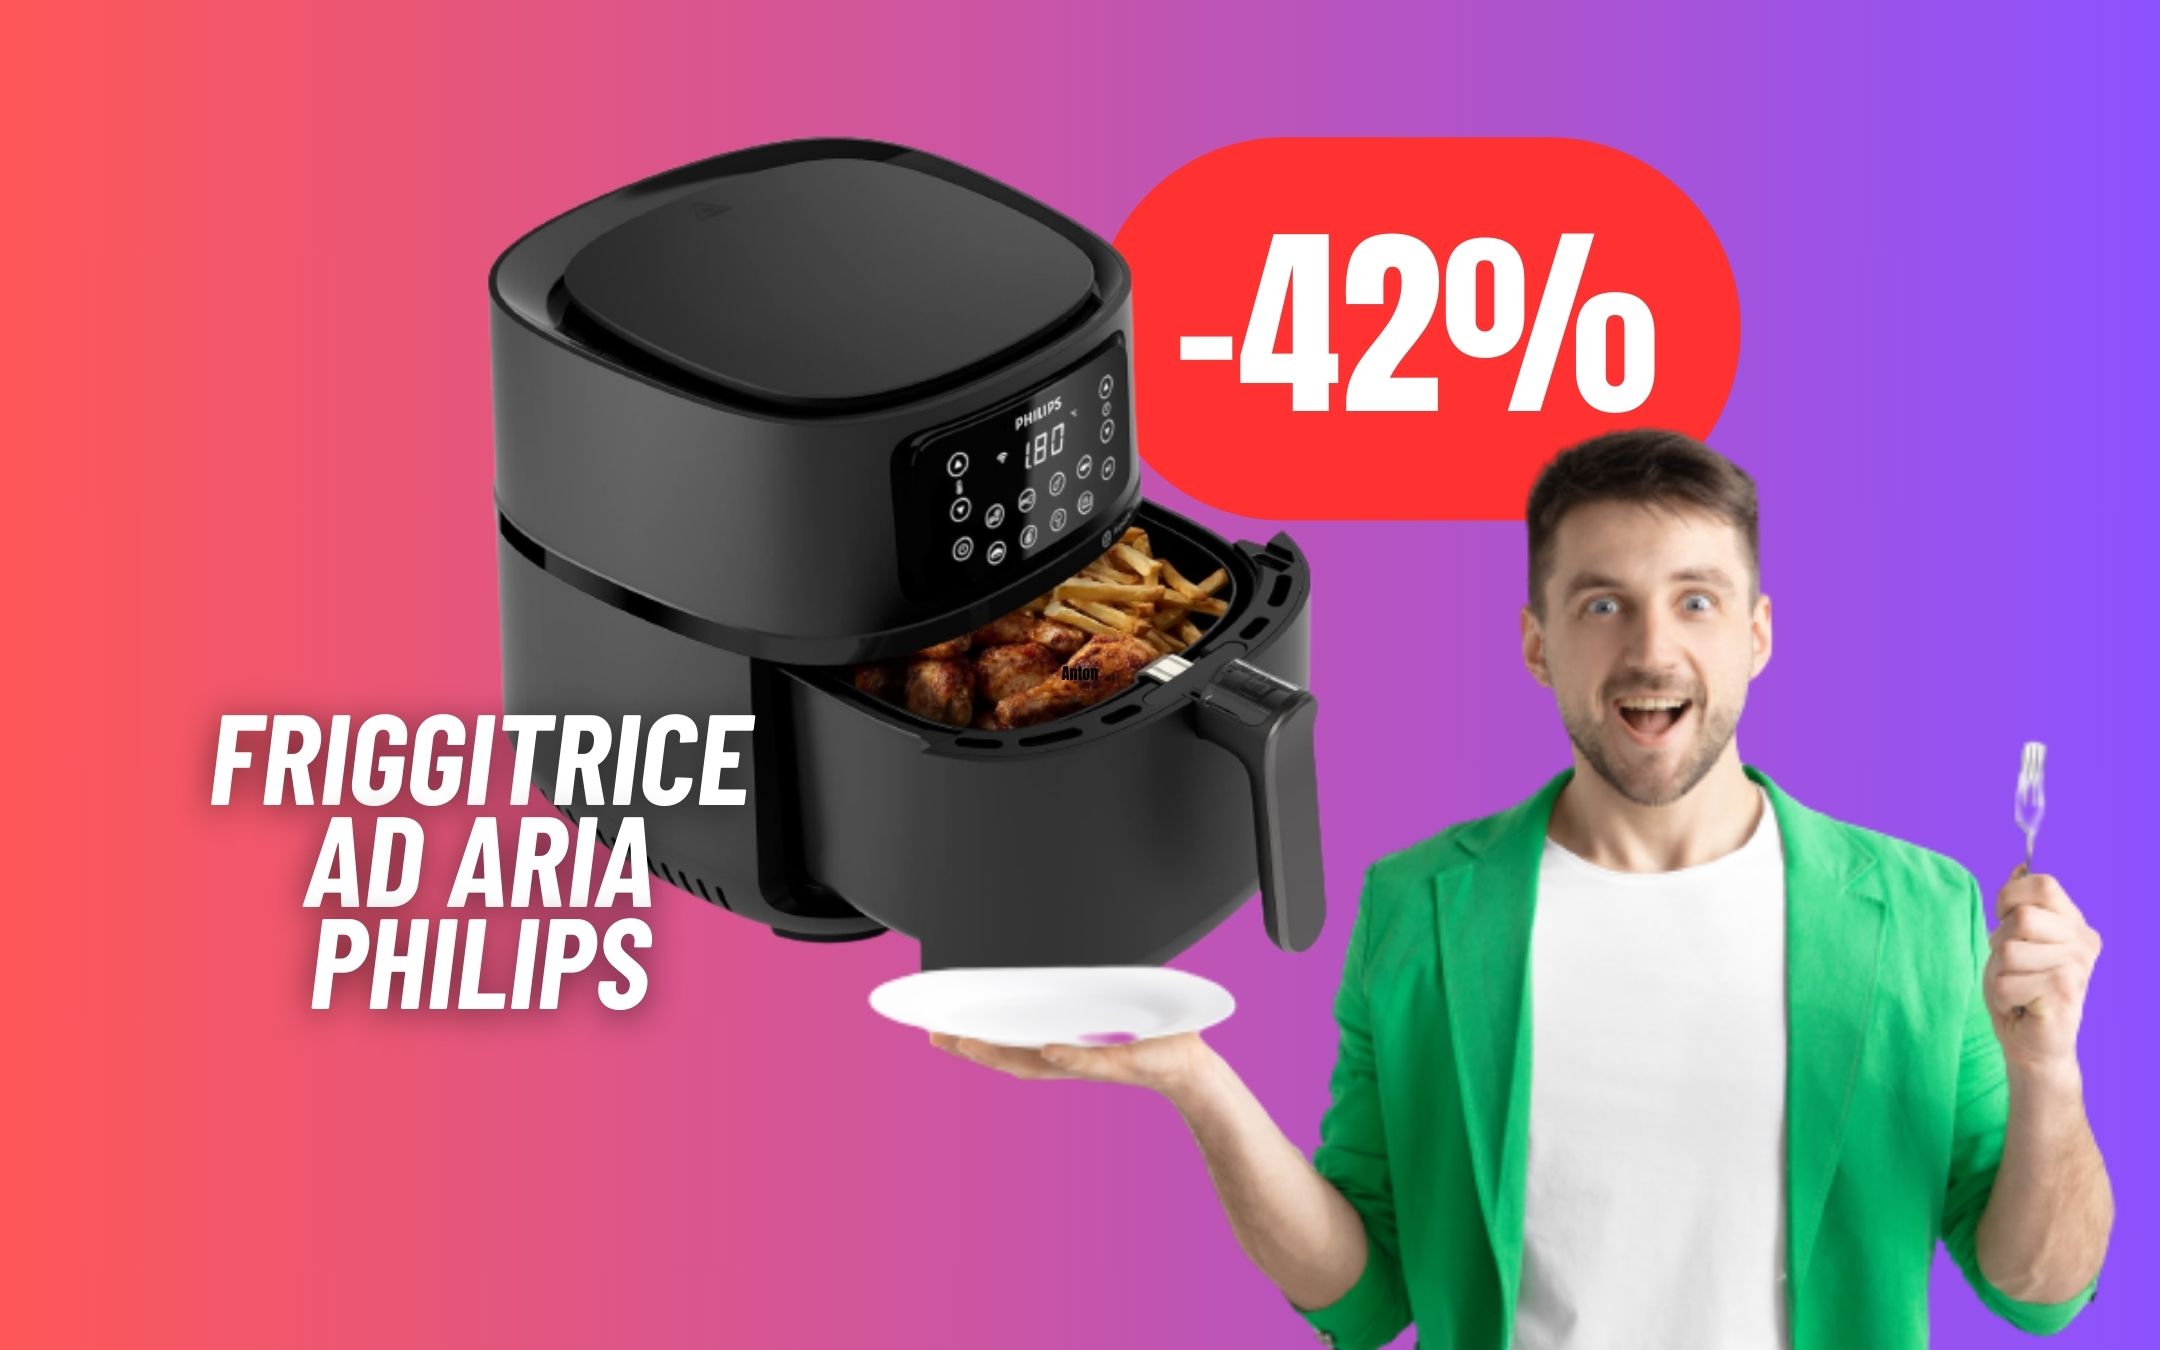 CUCINA SENZA GRASSI con la friggitrice ad aria Philips in SUPER SCONTO  (-42%)